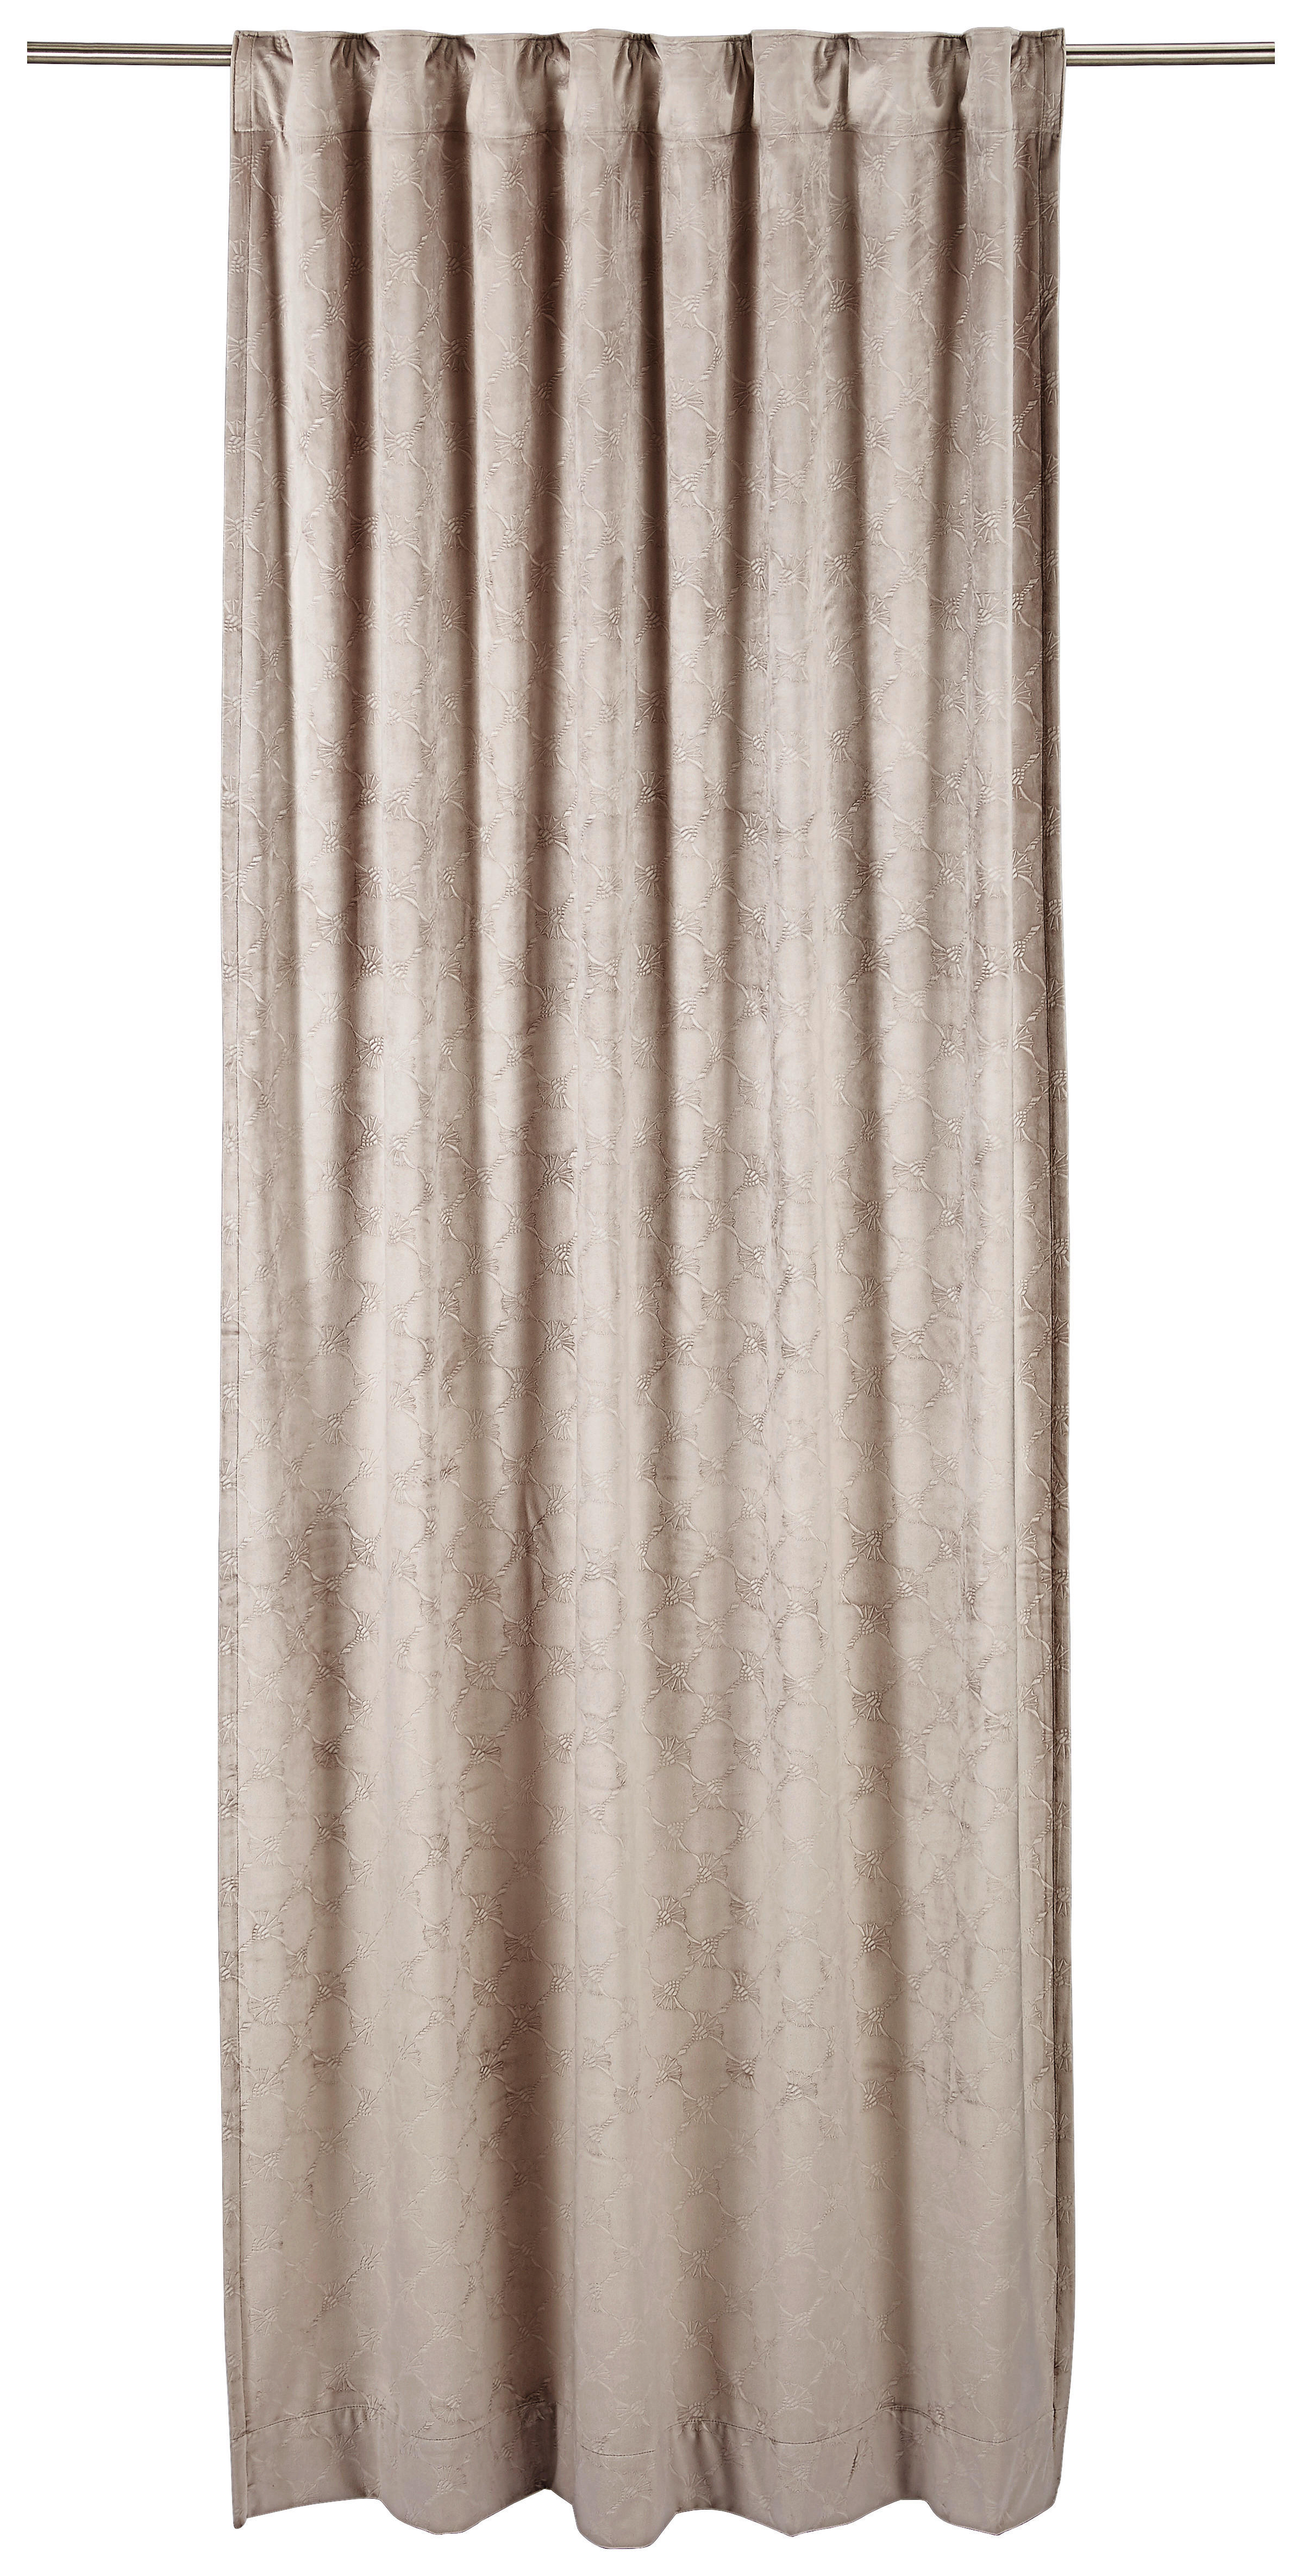 FERTIGVORHANG Impress blickdicht 130/250 cm   - Sandfarben, Design, Textil (130/250cm) - Joop!